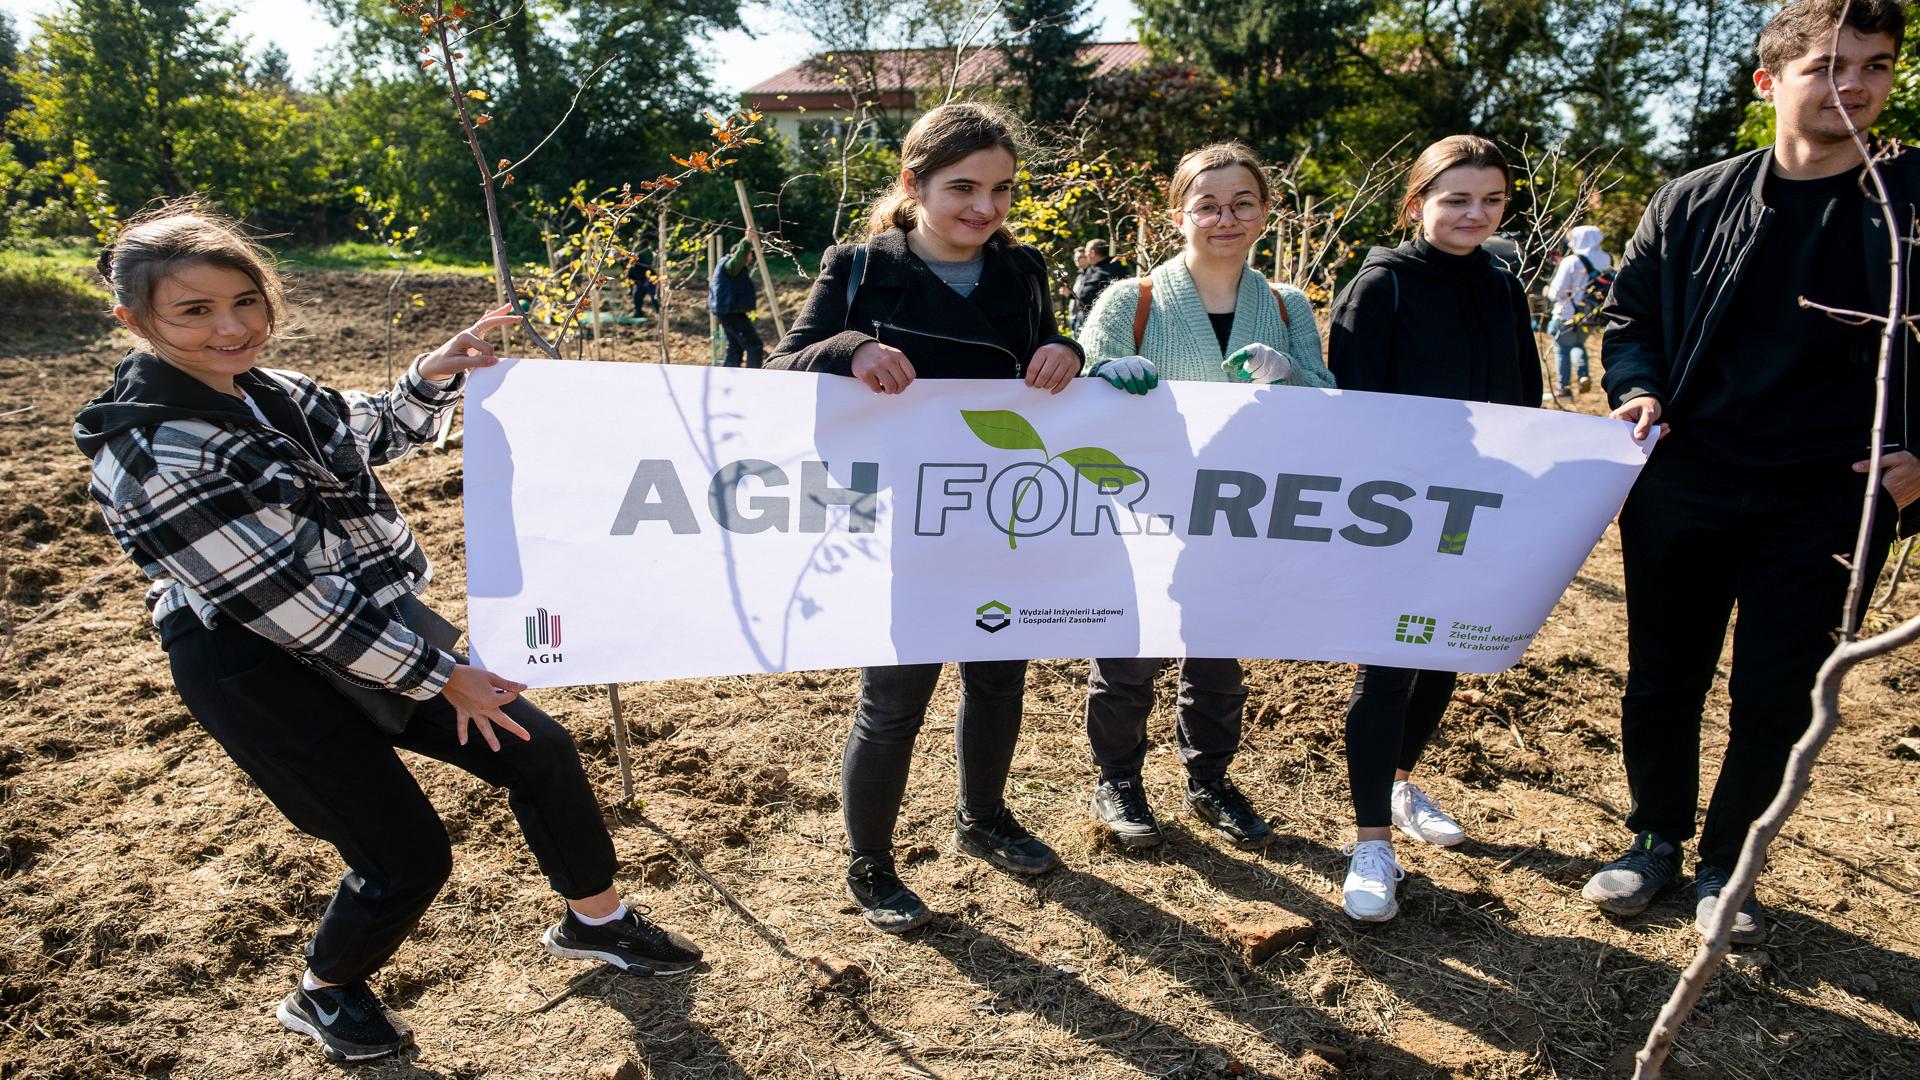 Cztery umiechnięte studentki oraz jeden student stoją obok siebie na polanie trzymając w ręce biały baner z szarym napisem AGH For.Rest. W tle zarys szkoły pomiędzy drzewami.